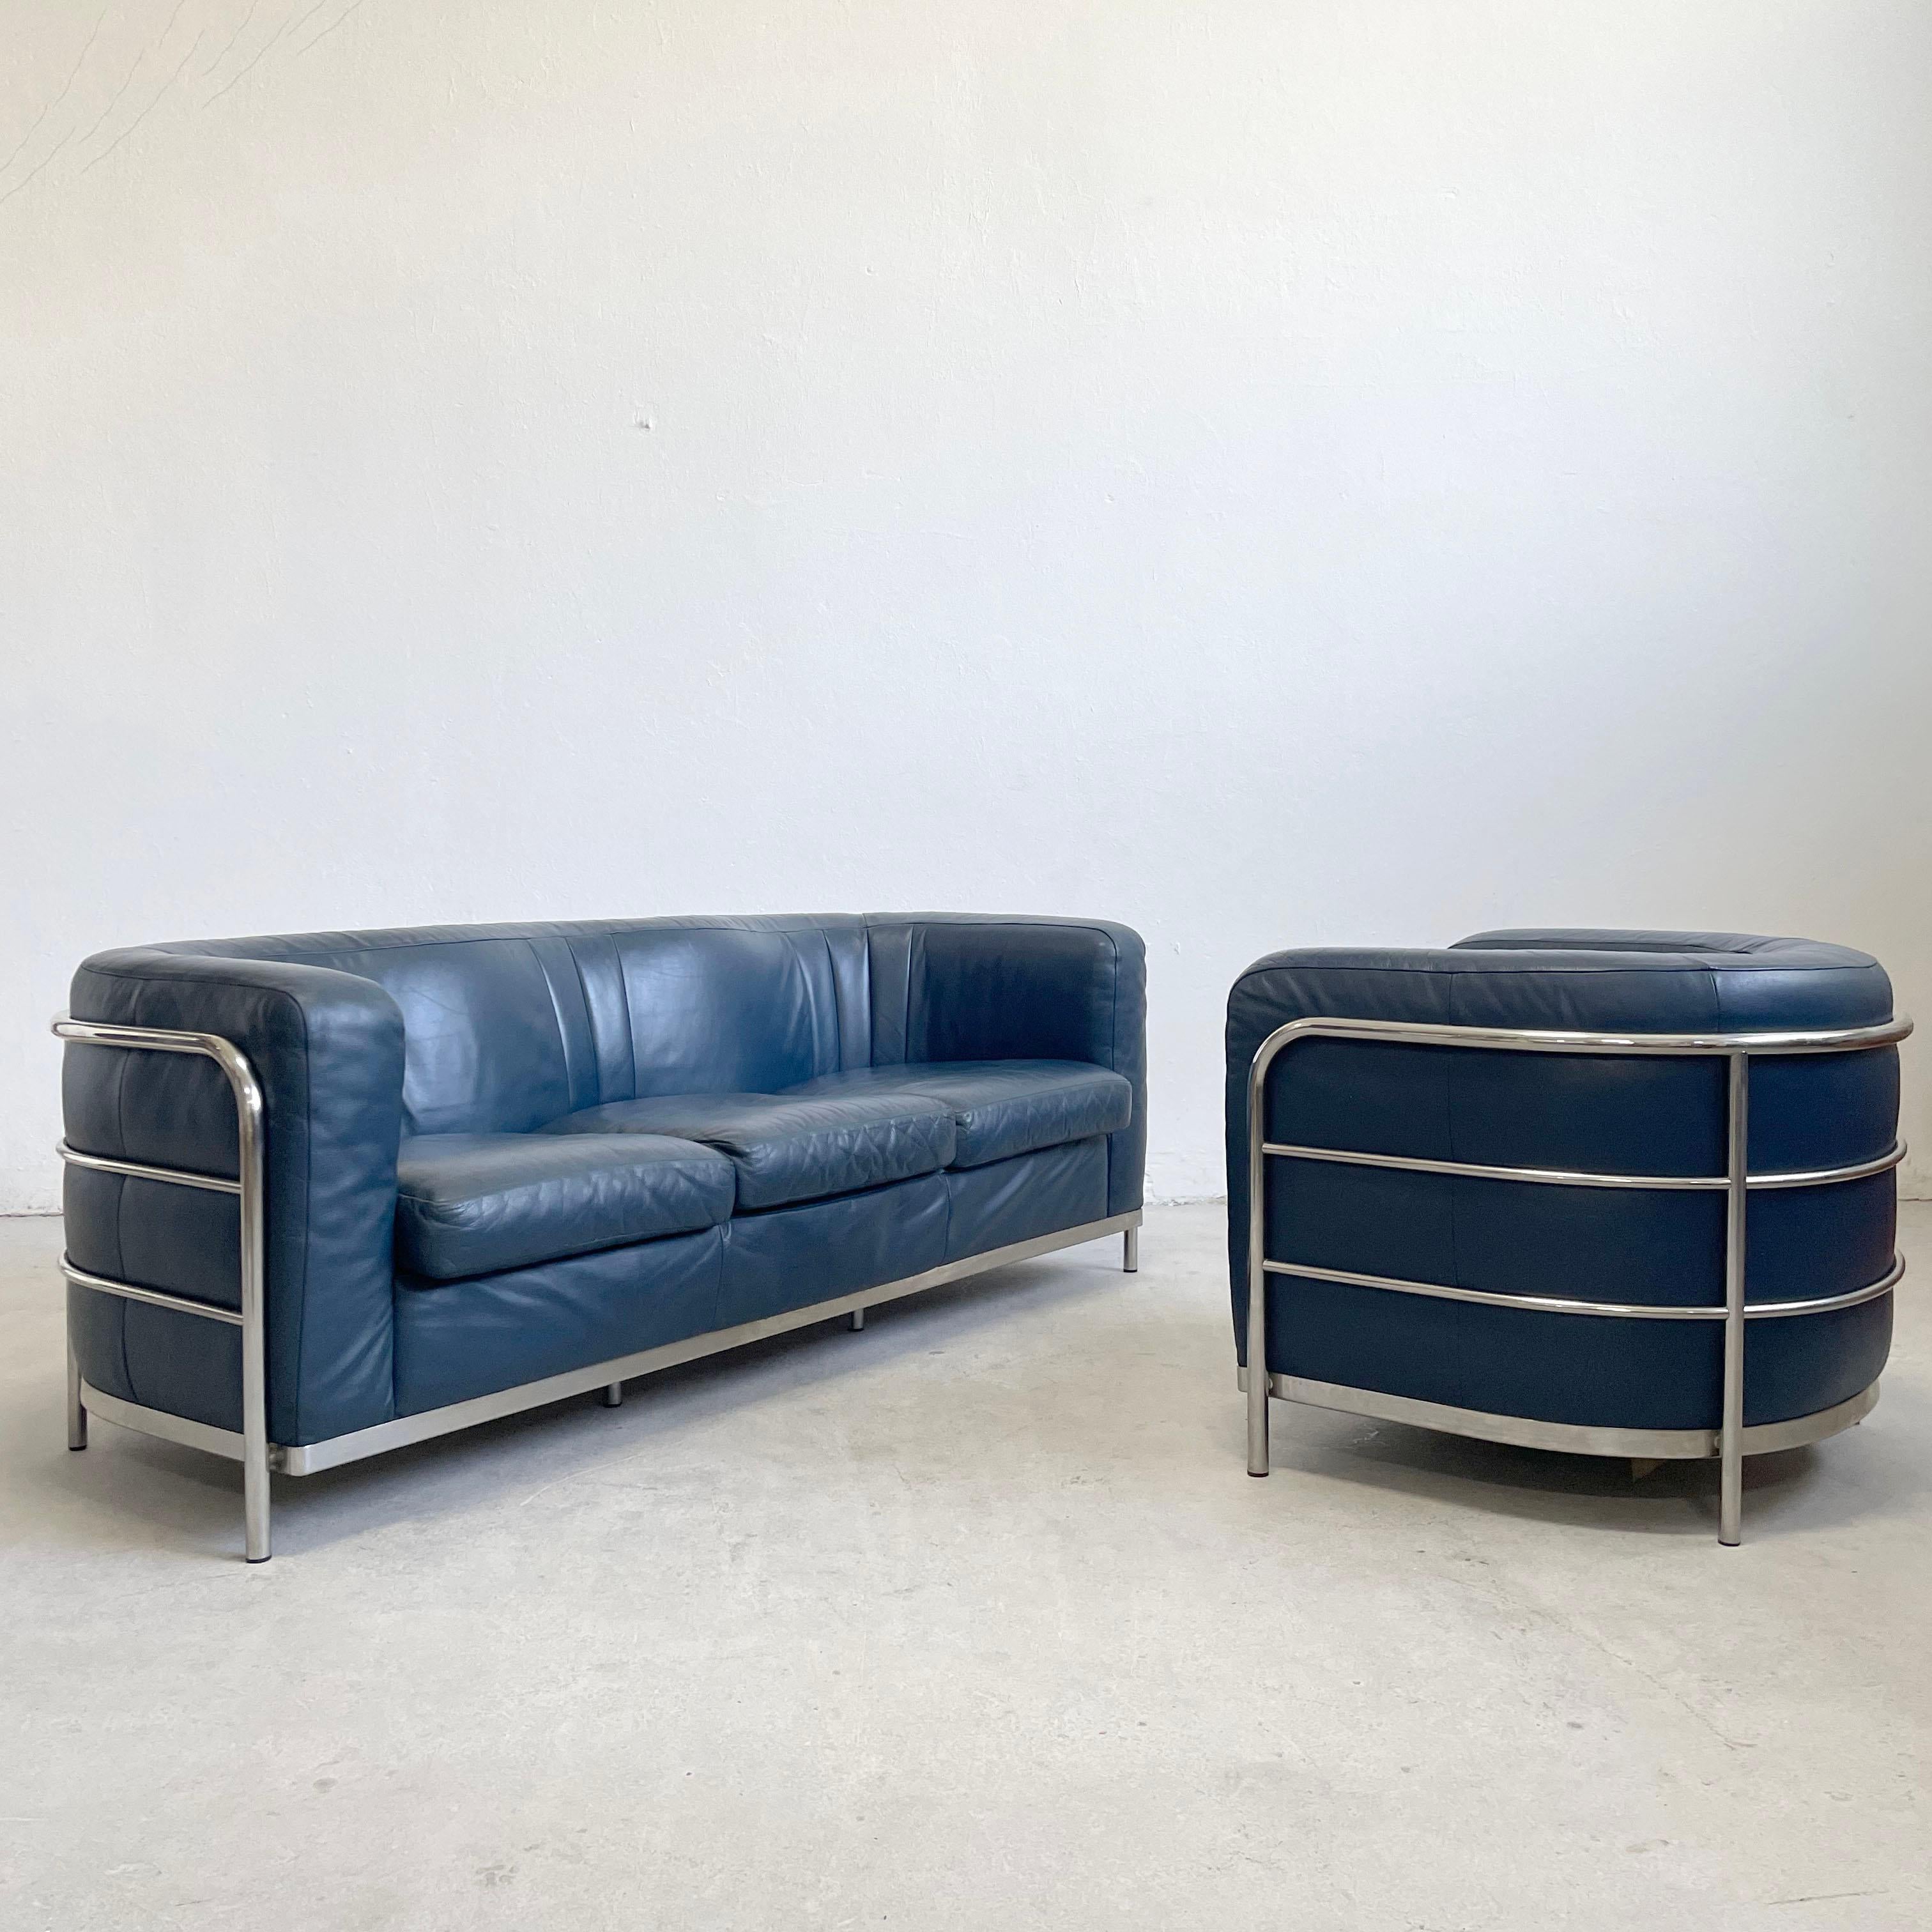 De Pas, D'Urbino und Lomazzi für Zanotta, Wohnzimmergarnitur bestehend aus einem Sofa und einem Sessel, Modell 'Onda', blaues Leder, Chrom, Italien, 1985

Abgerundetes und geschwungenes Sofa 